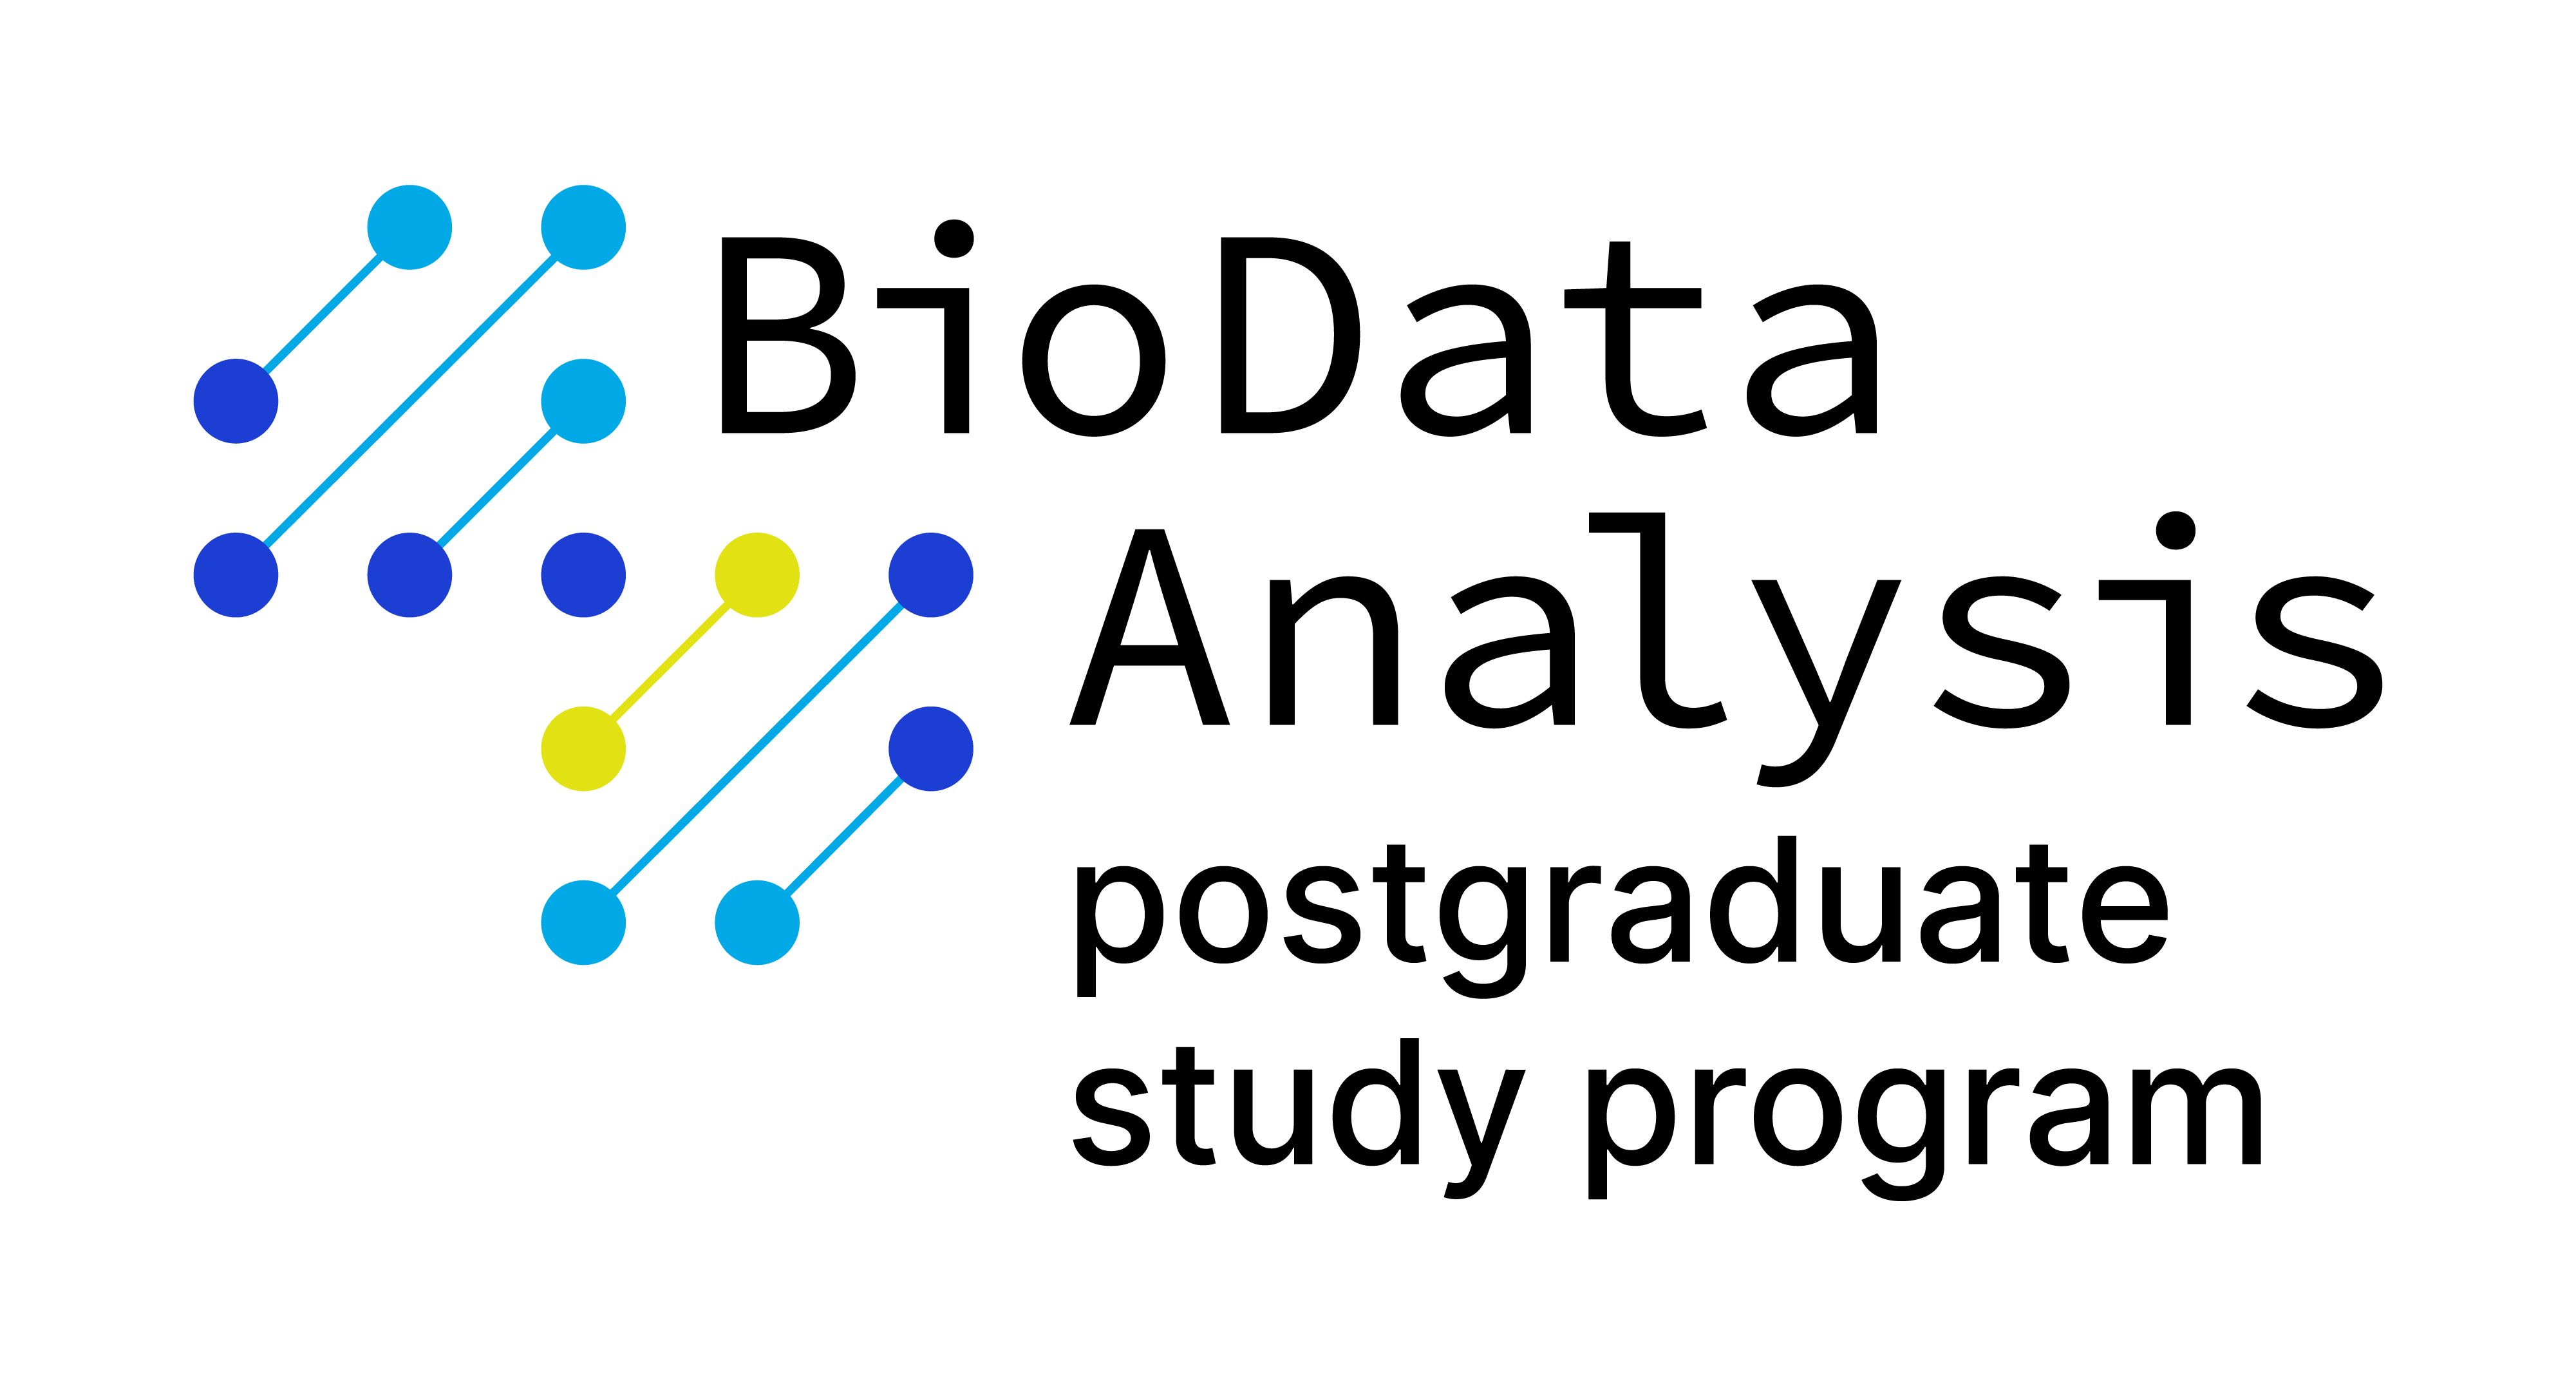 Biodata Analysis szakirányú továbbképzés - nyílt nap és jelentkezés